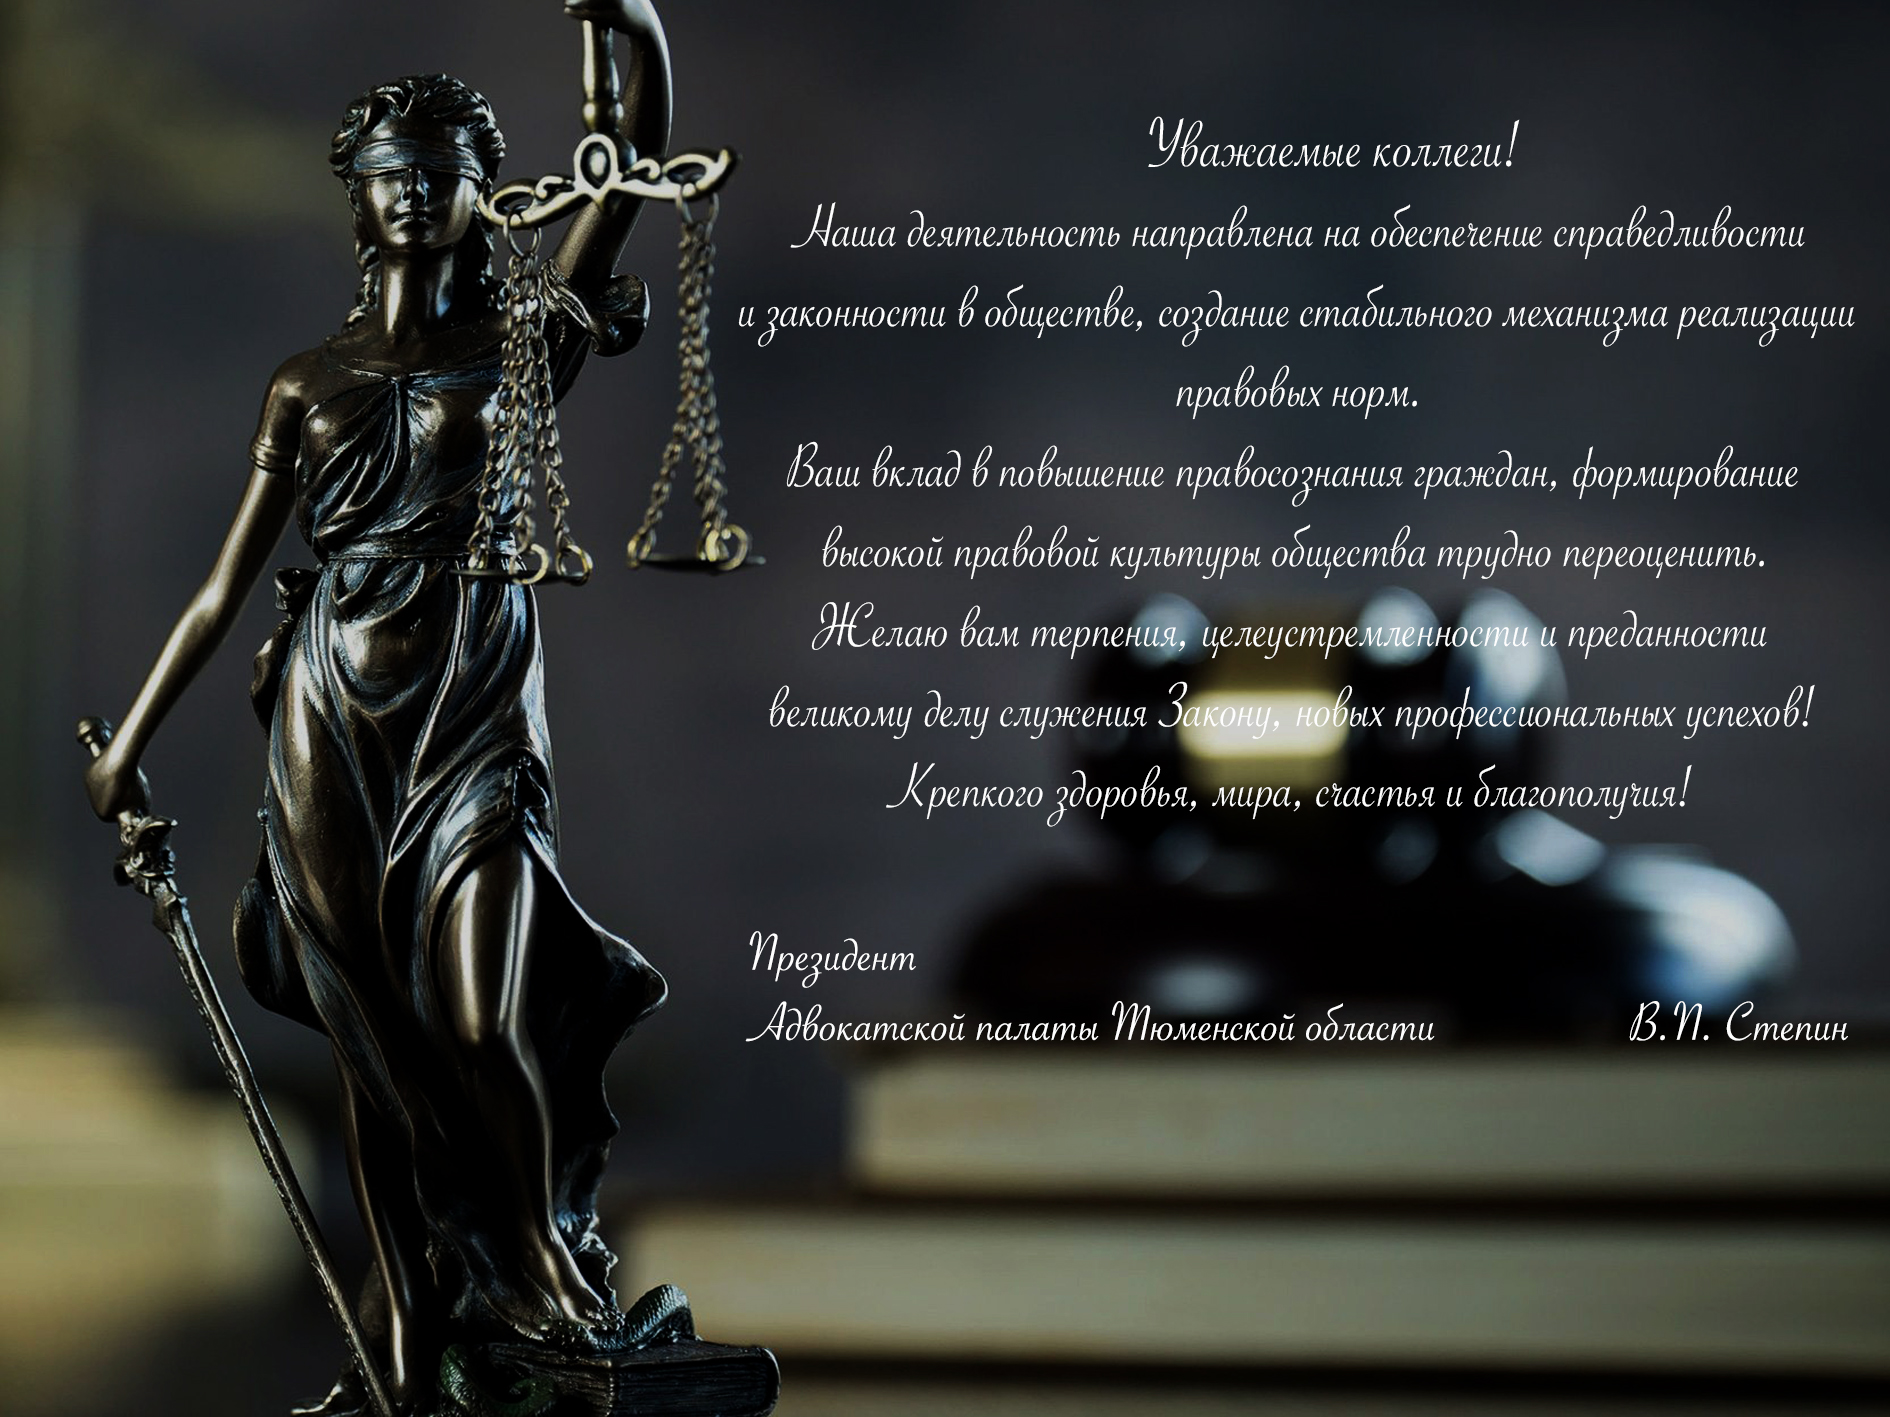  3 декабря - День Юриста